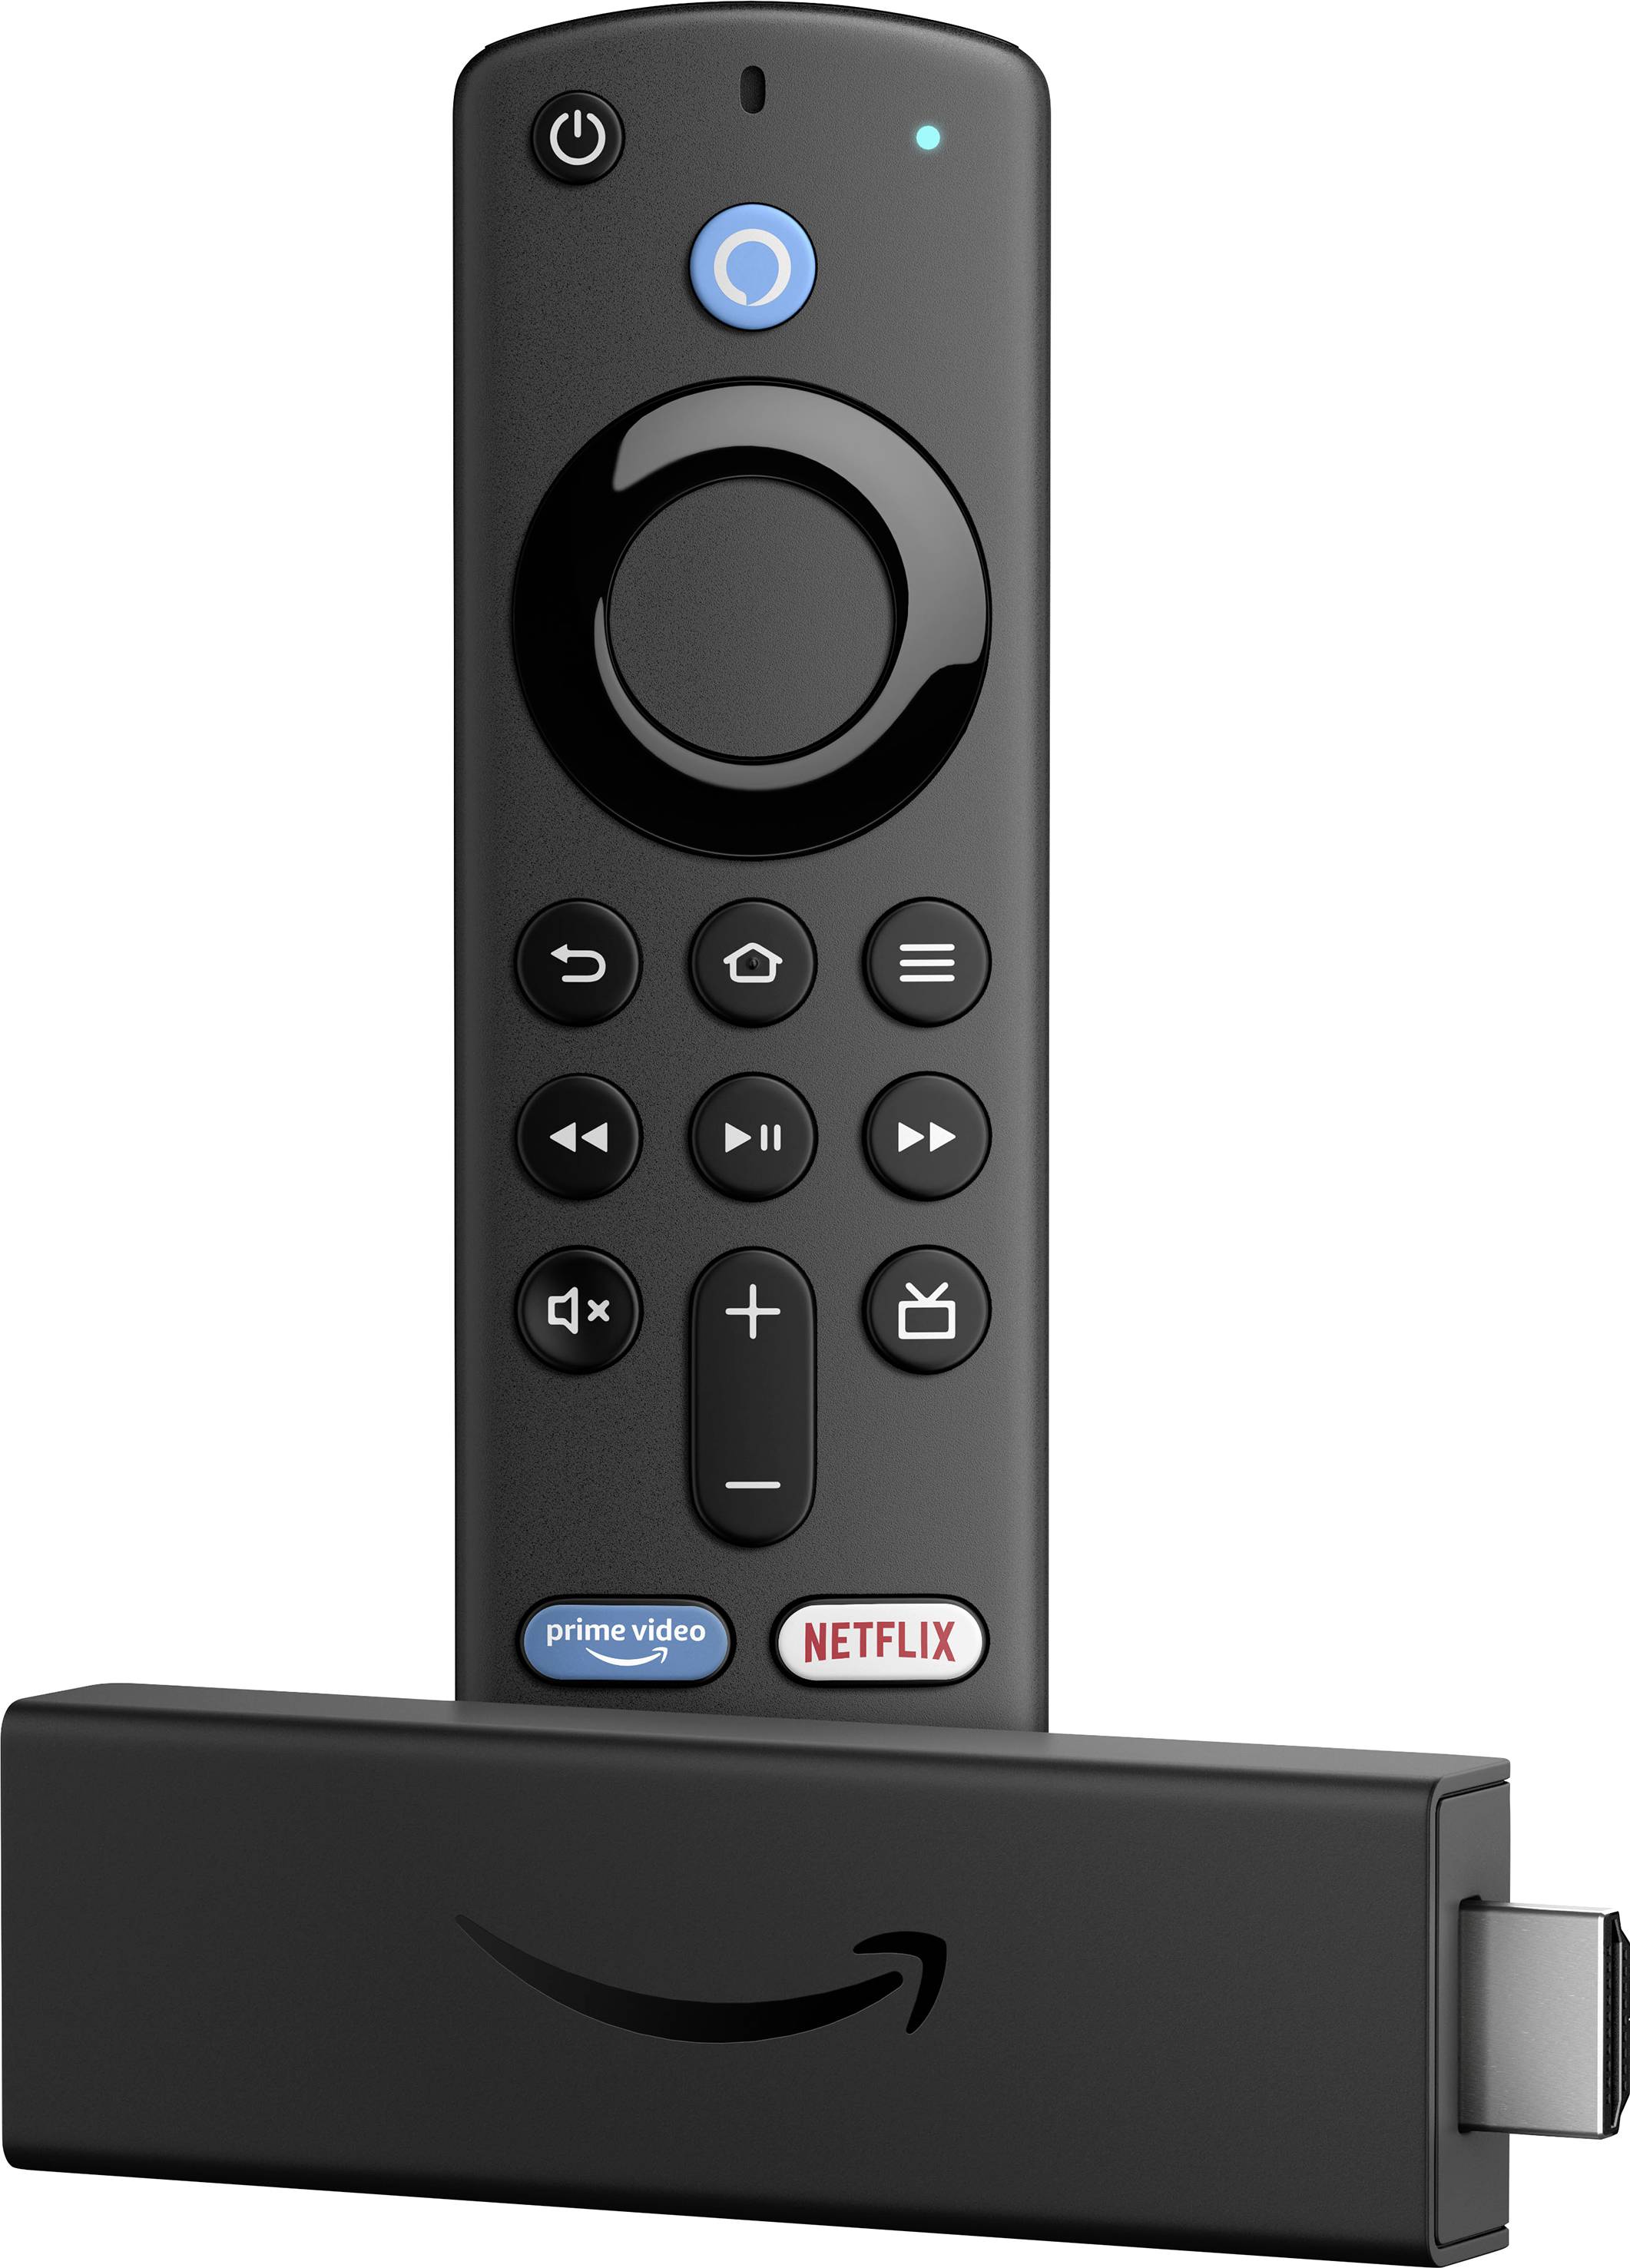 Fire TV Stick Chiavetta streaming con comando vocale Alexa